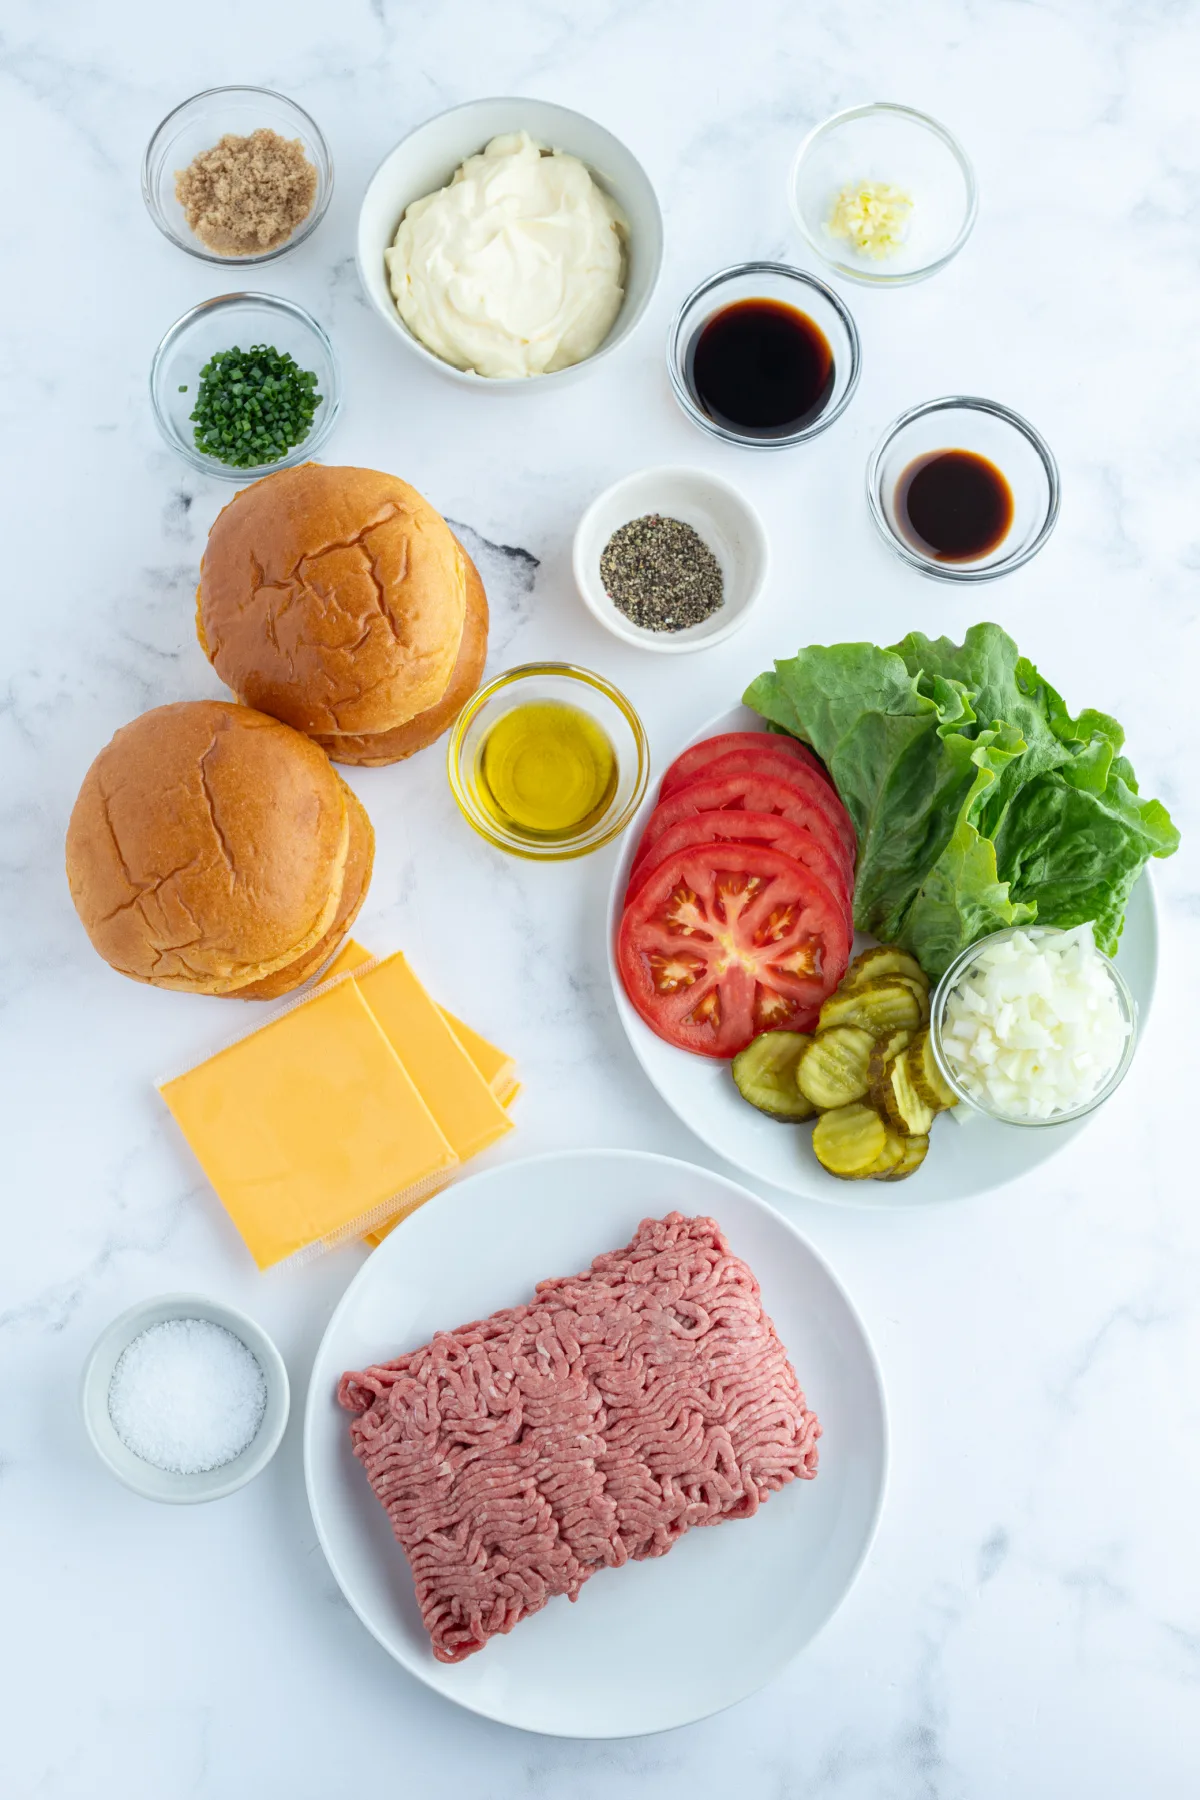 ingredients displayed for making stovetop smash burgers